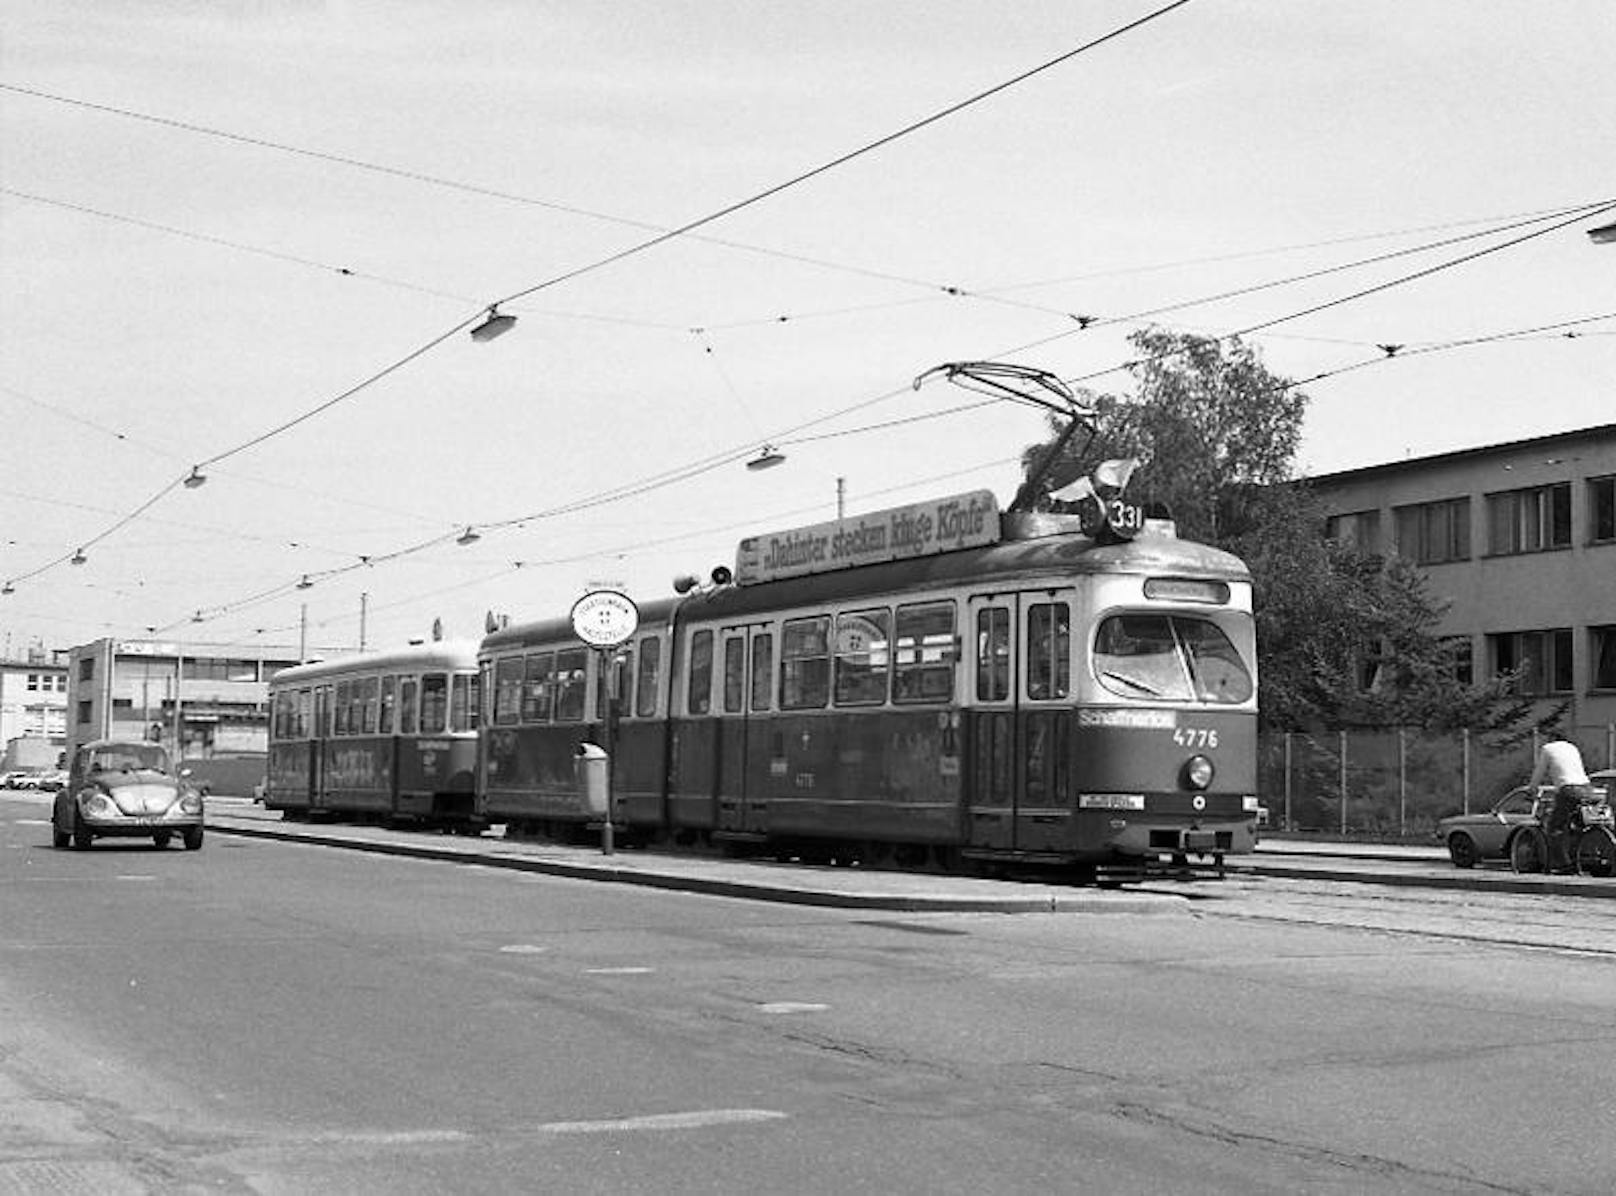 Zug der Linie 331, in der Brünnerstraße Type E1-c3, August 1982